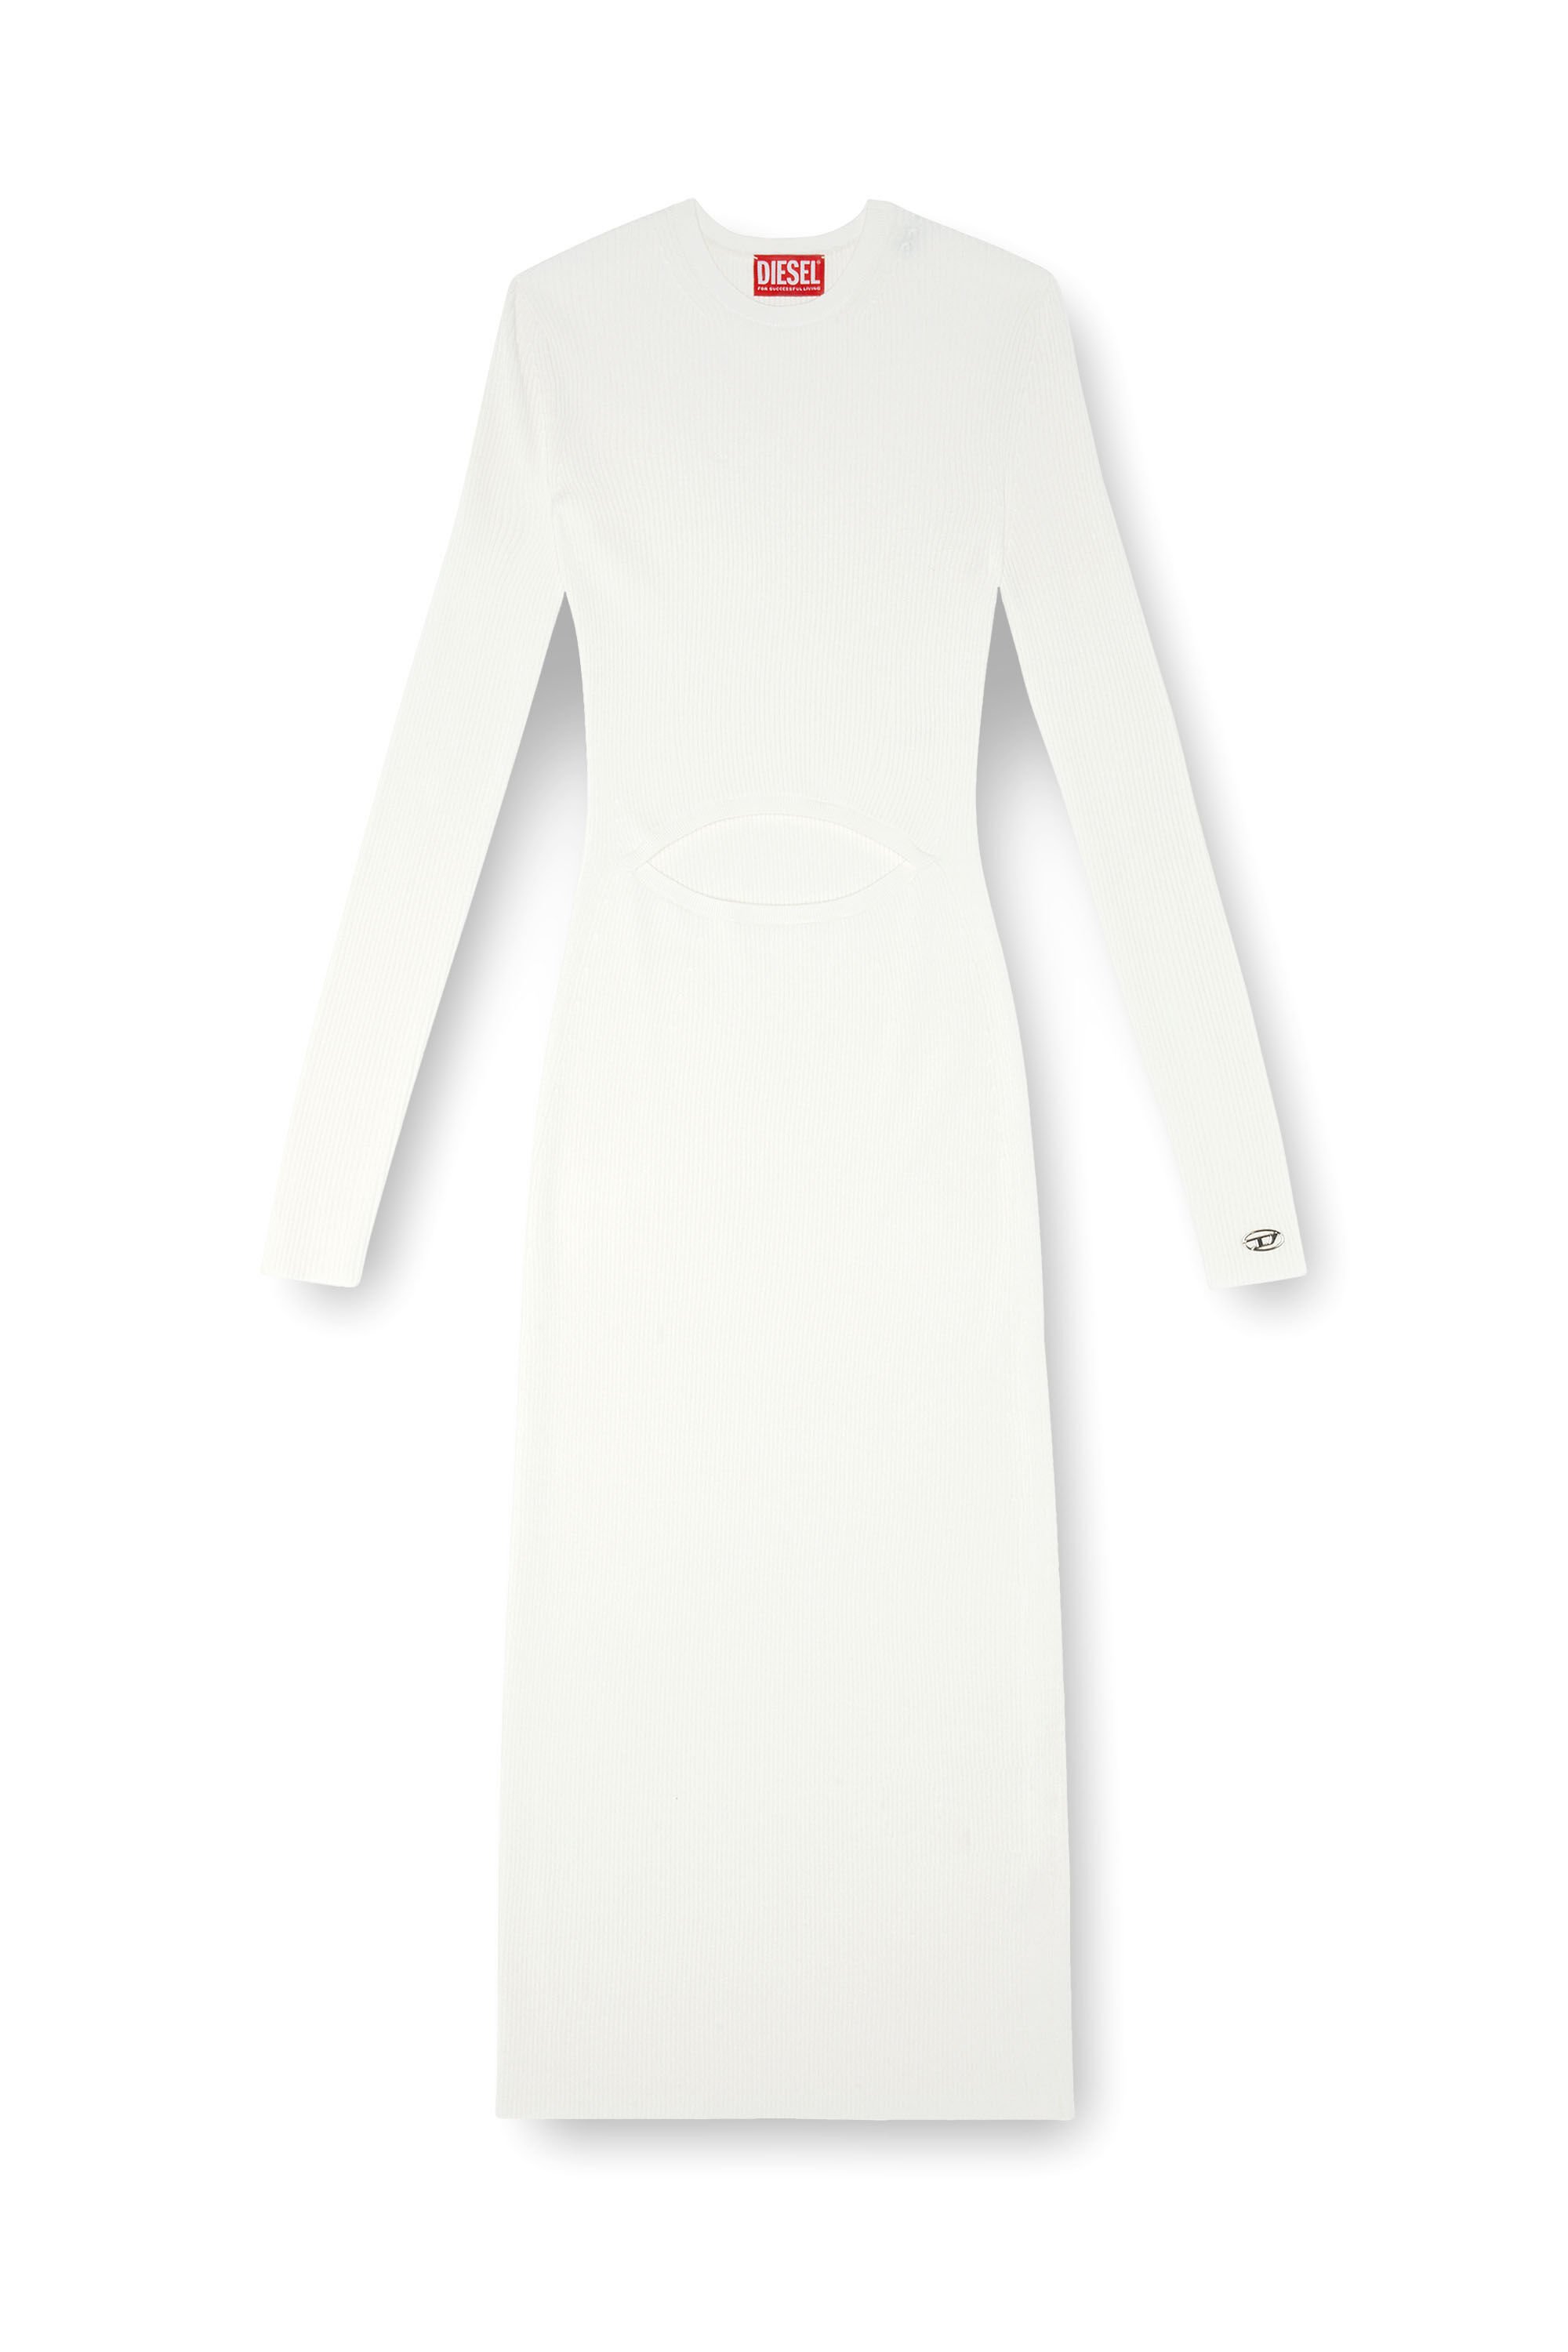 Diesel - M-PELAGOS, Mujer Vestido de mezcla de lana con recorte in Blanco - Image 2